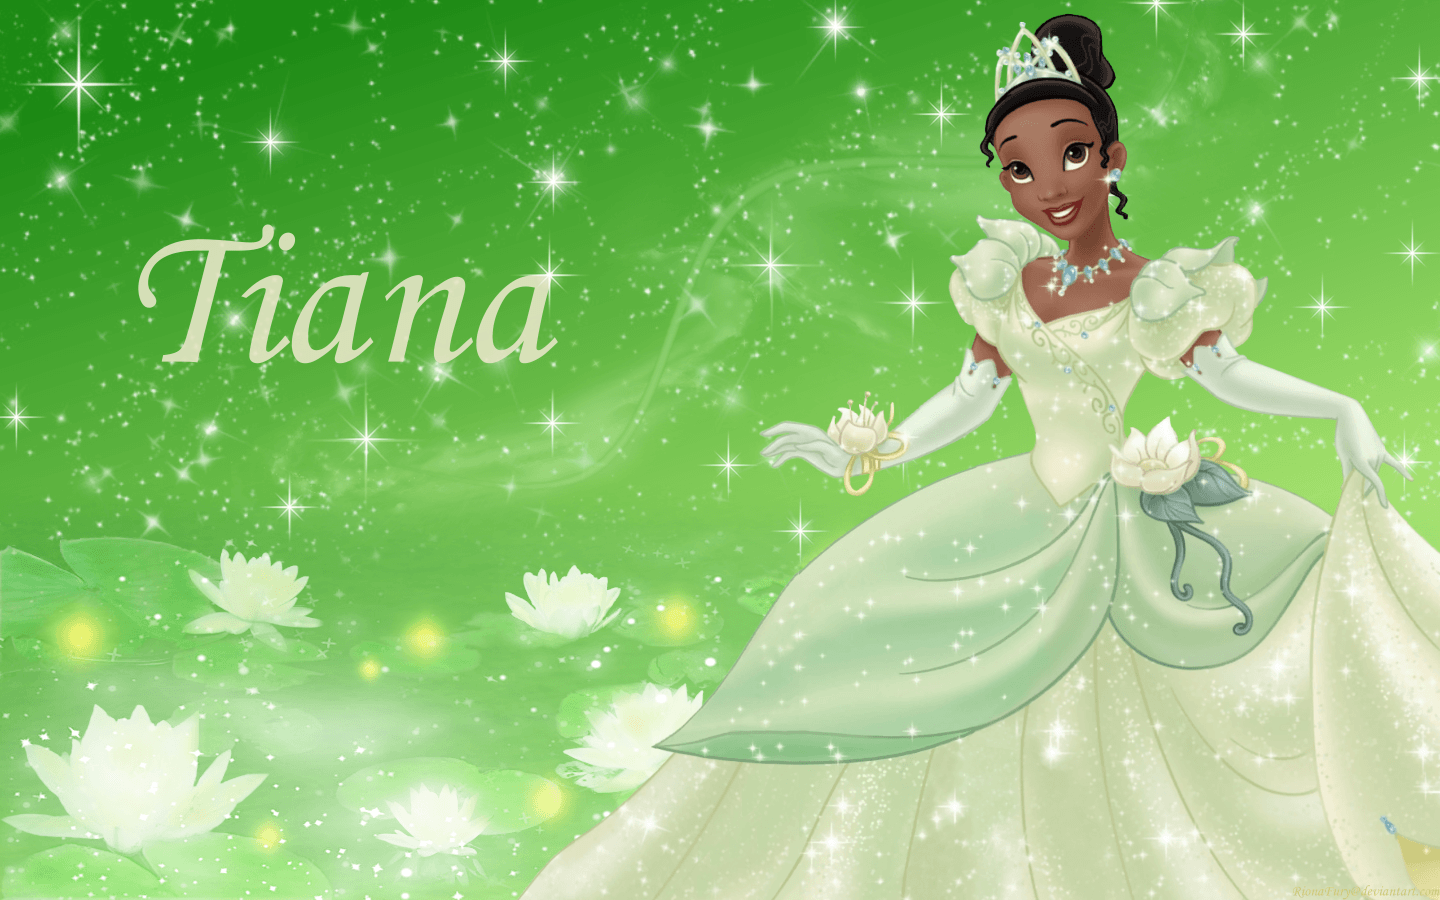 Disney Princess Tiana Wallpaper